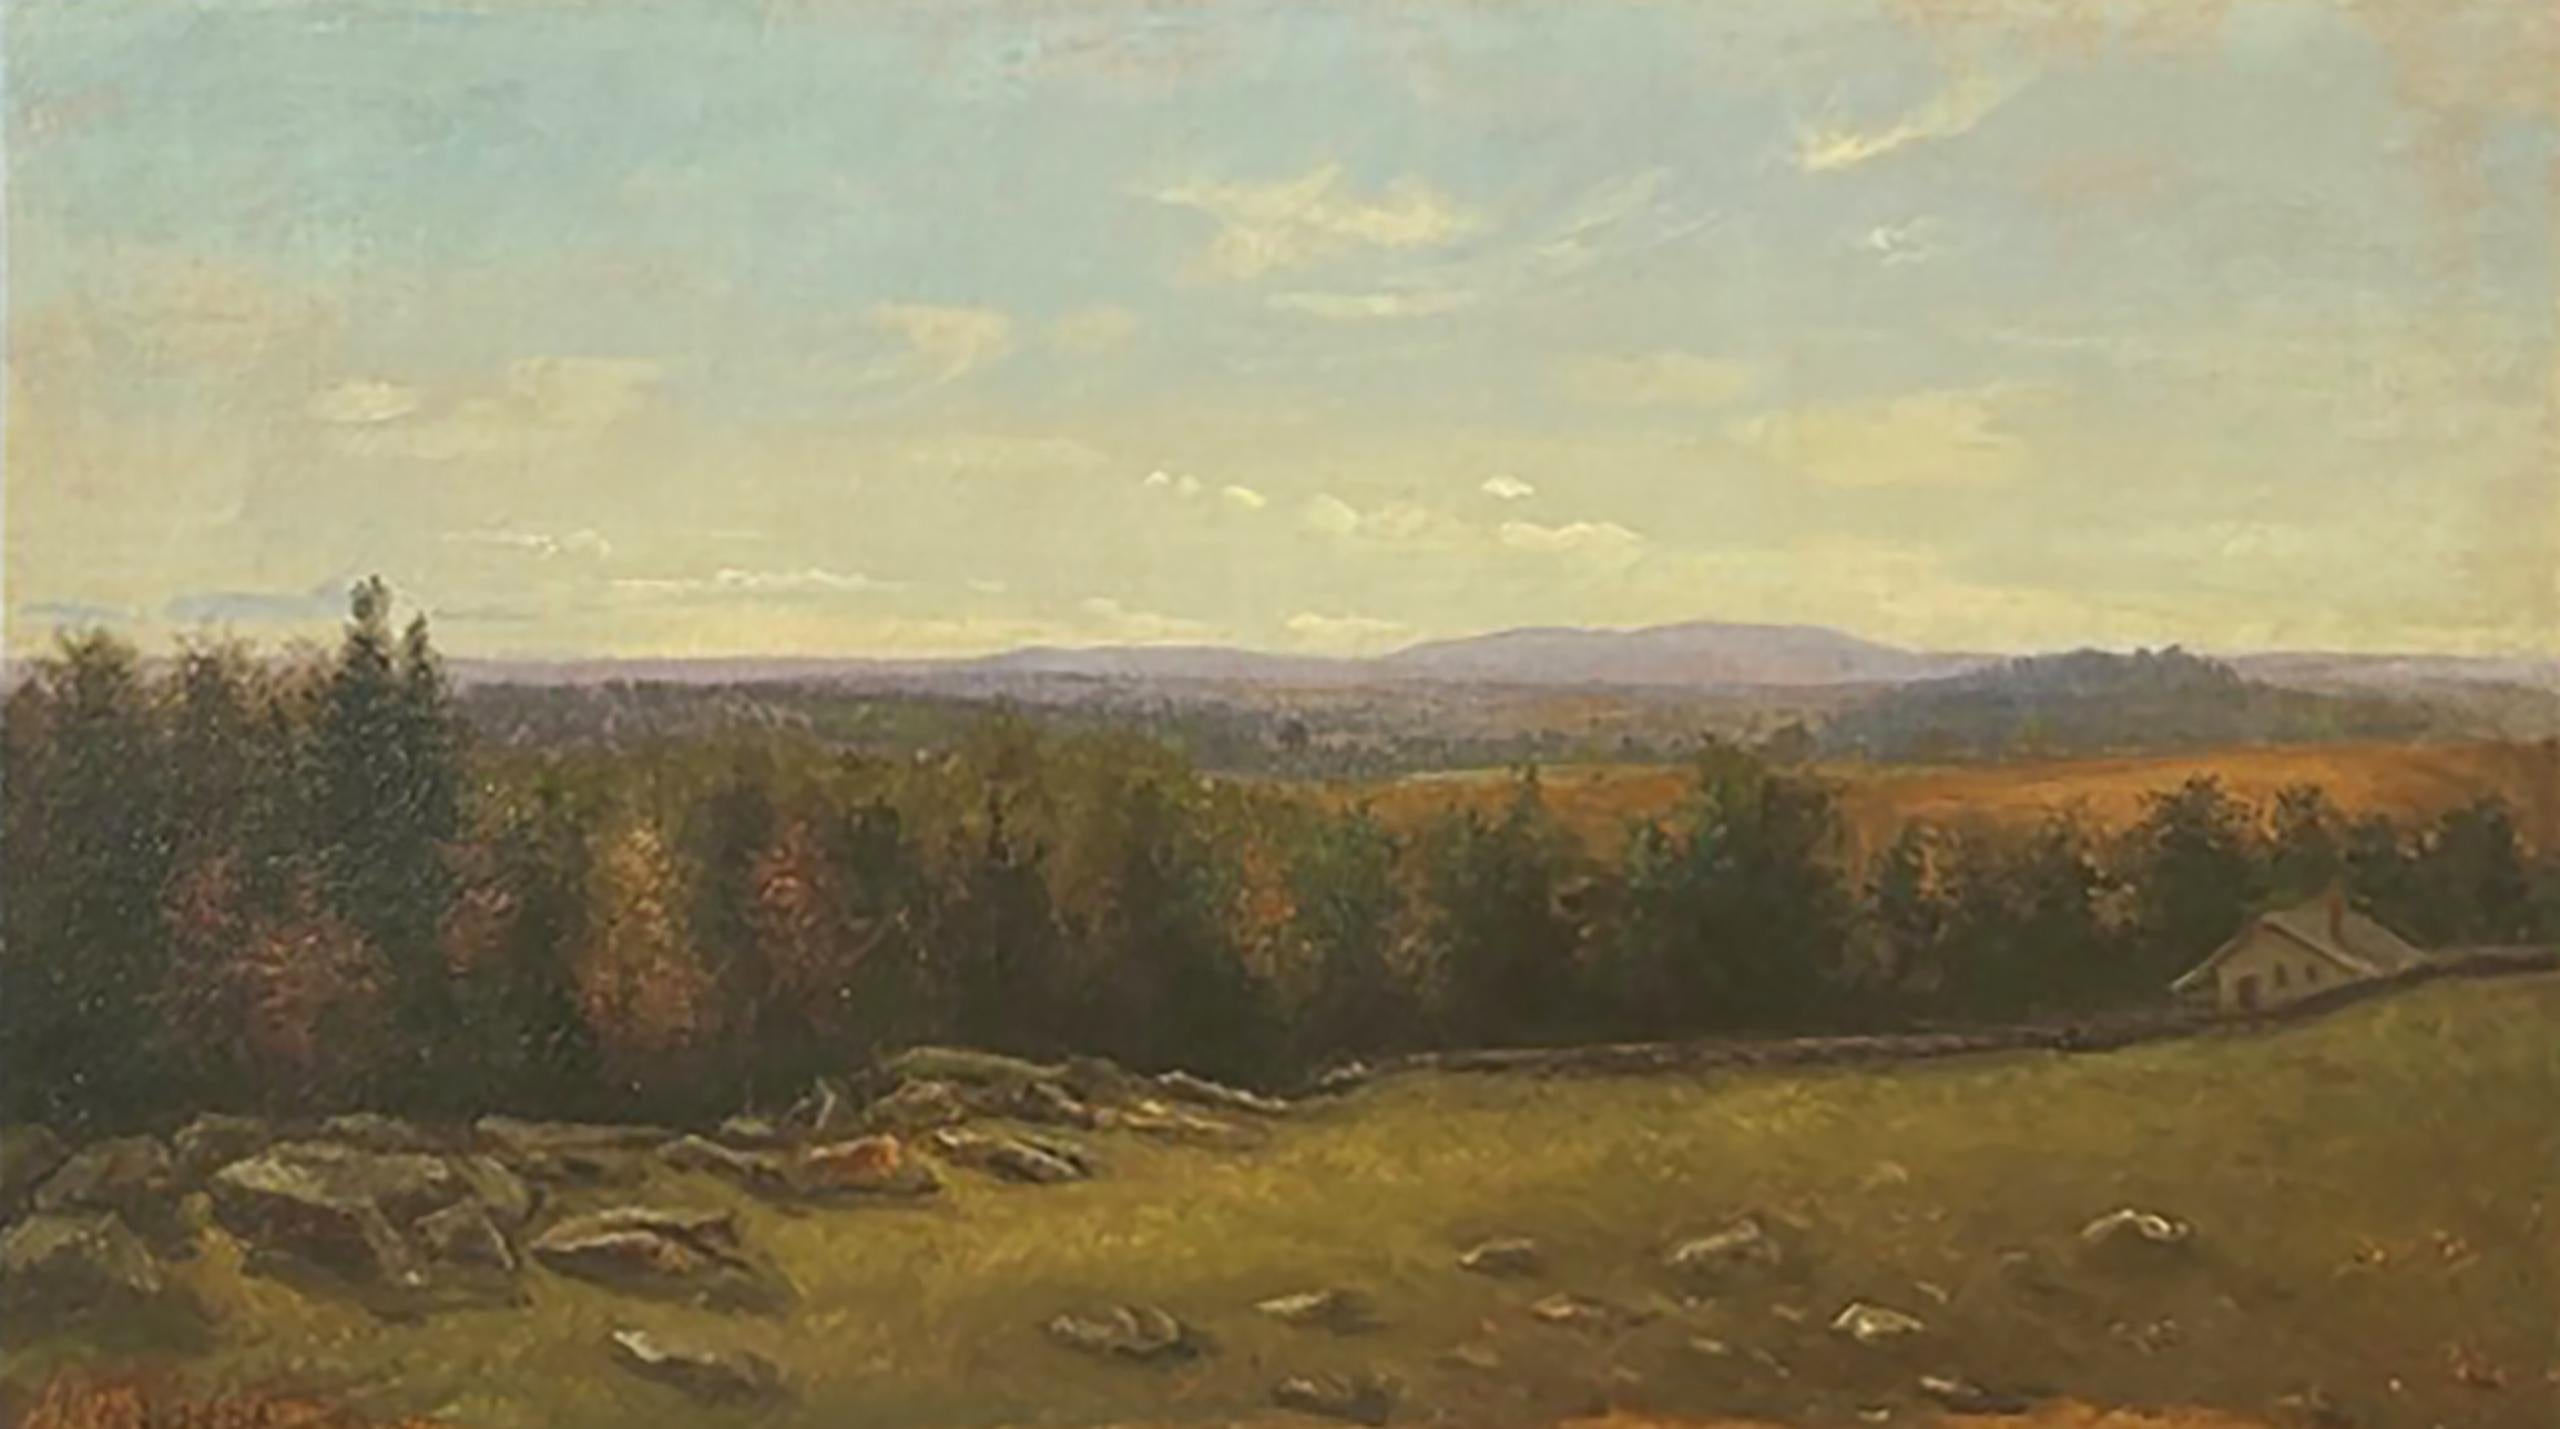 Landschaft im Hudson Valley von Worthington Whittredge (Amerikaner, 1820-1910) – Painting von Thomas Worthington Whittredge